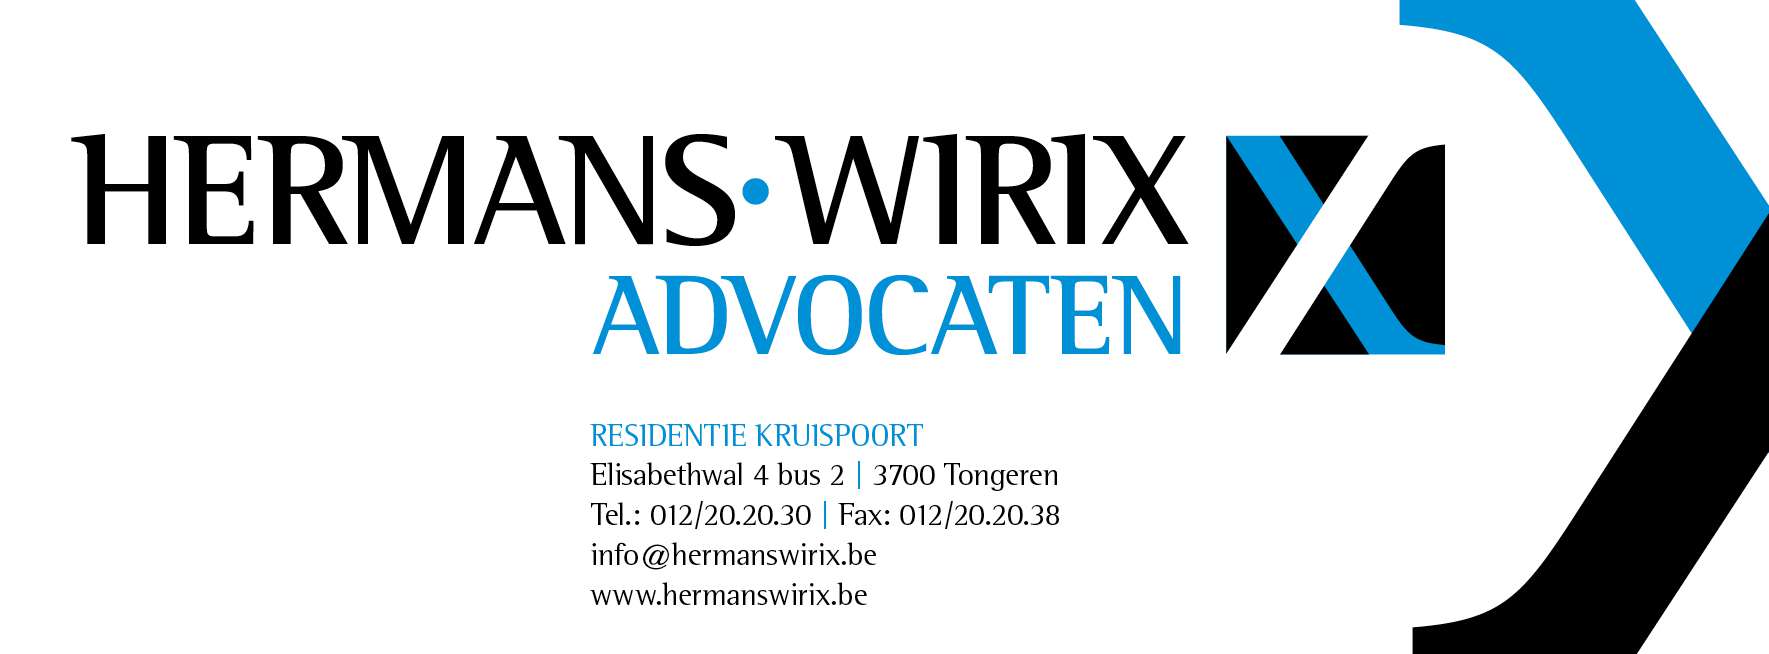 advocaten Zichen-Zussen-Bolder Hermans-Wirix advocaten